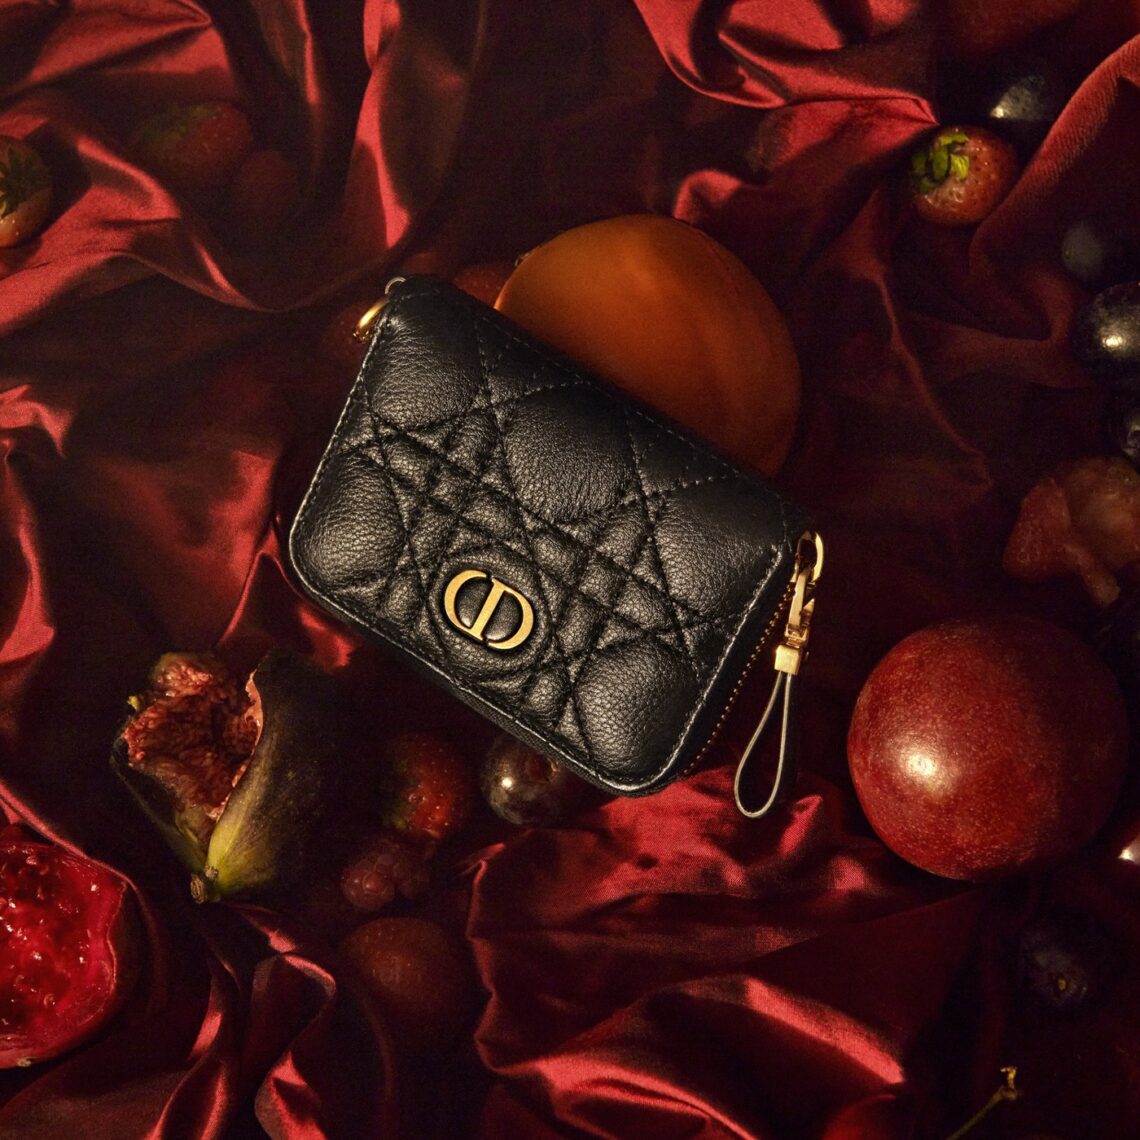 Nova bolsa da Dior homenageia o icônico endereço da grife na